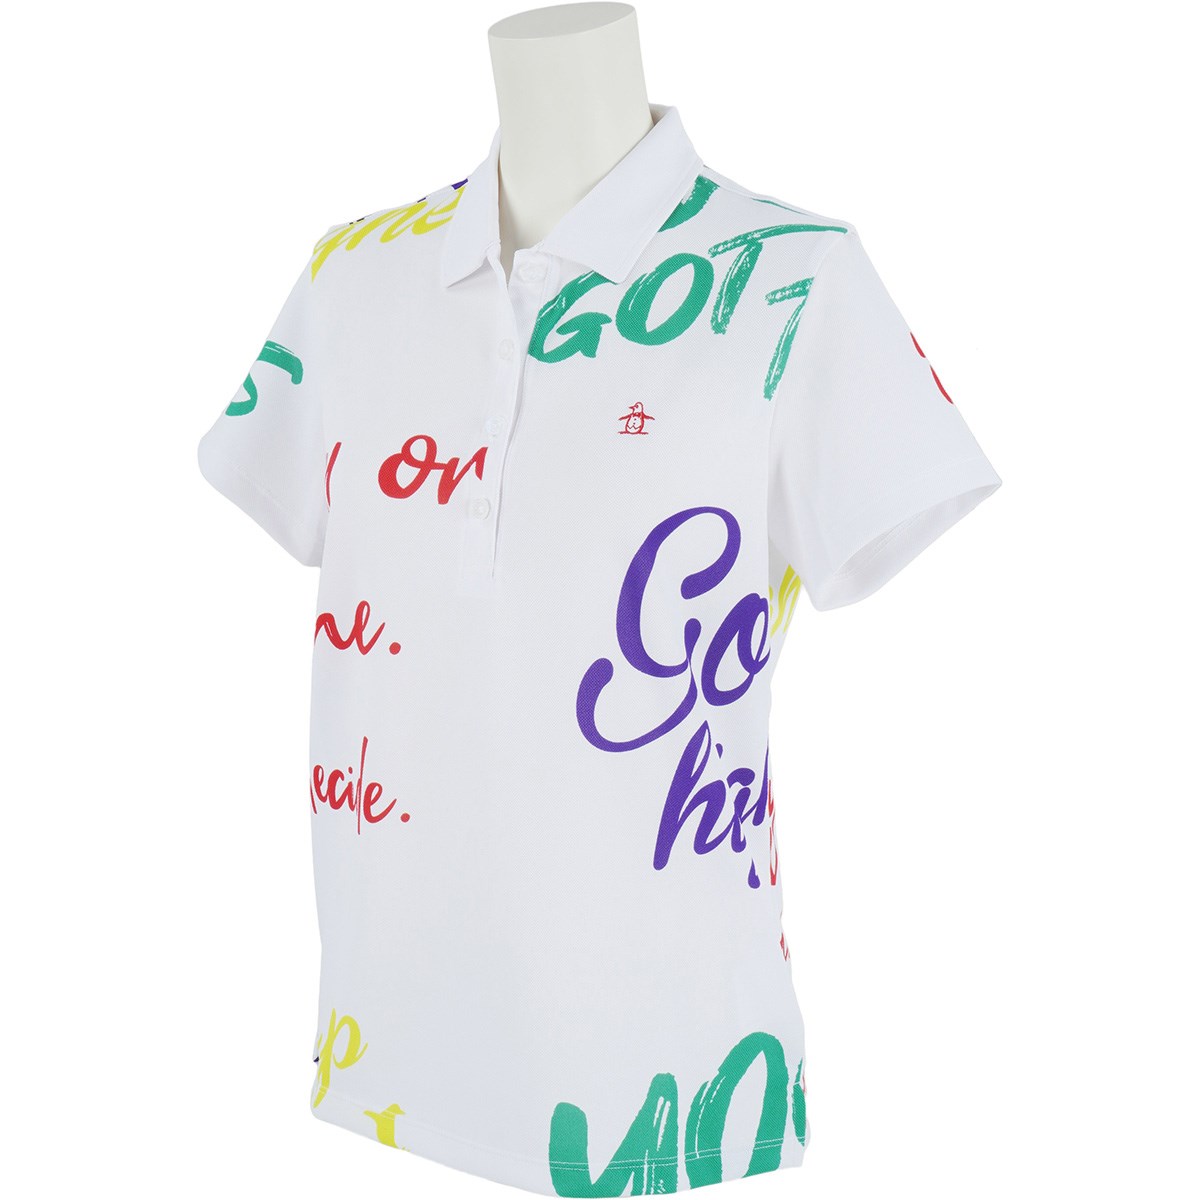 マンシングウェア ゴルフウェア レディース ポロシャツの人気商品 